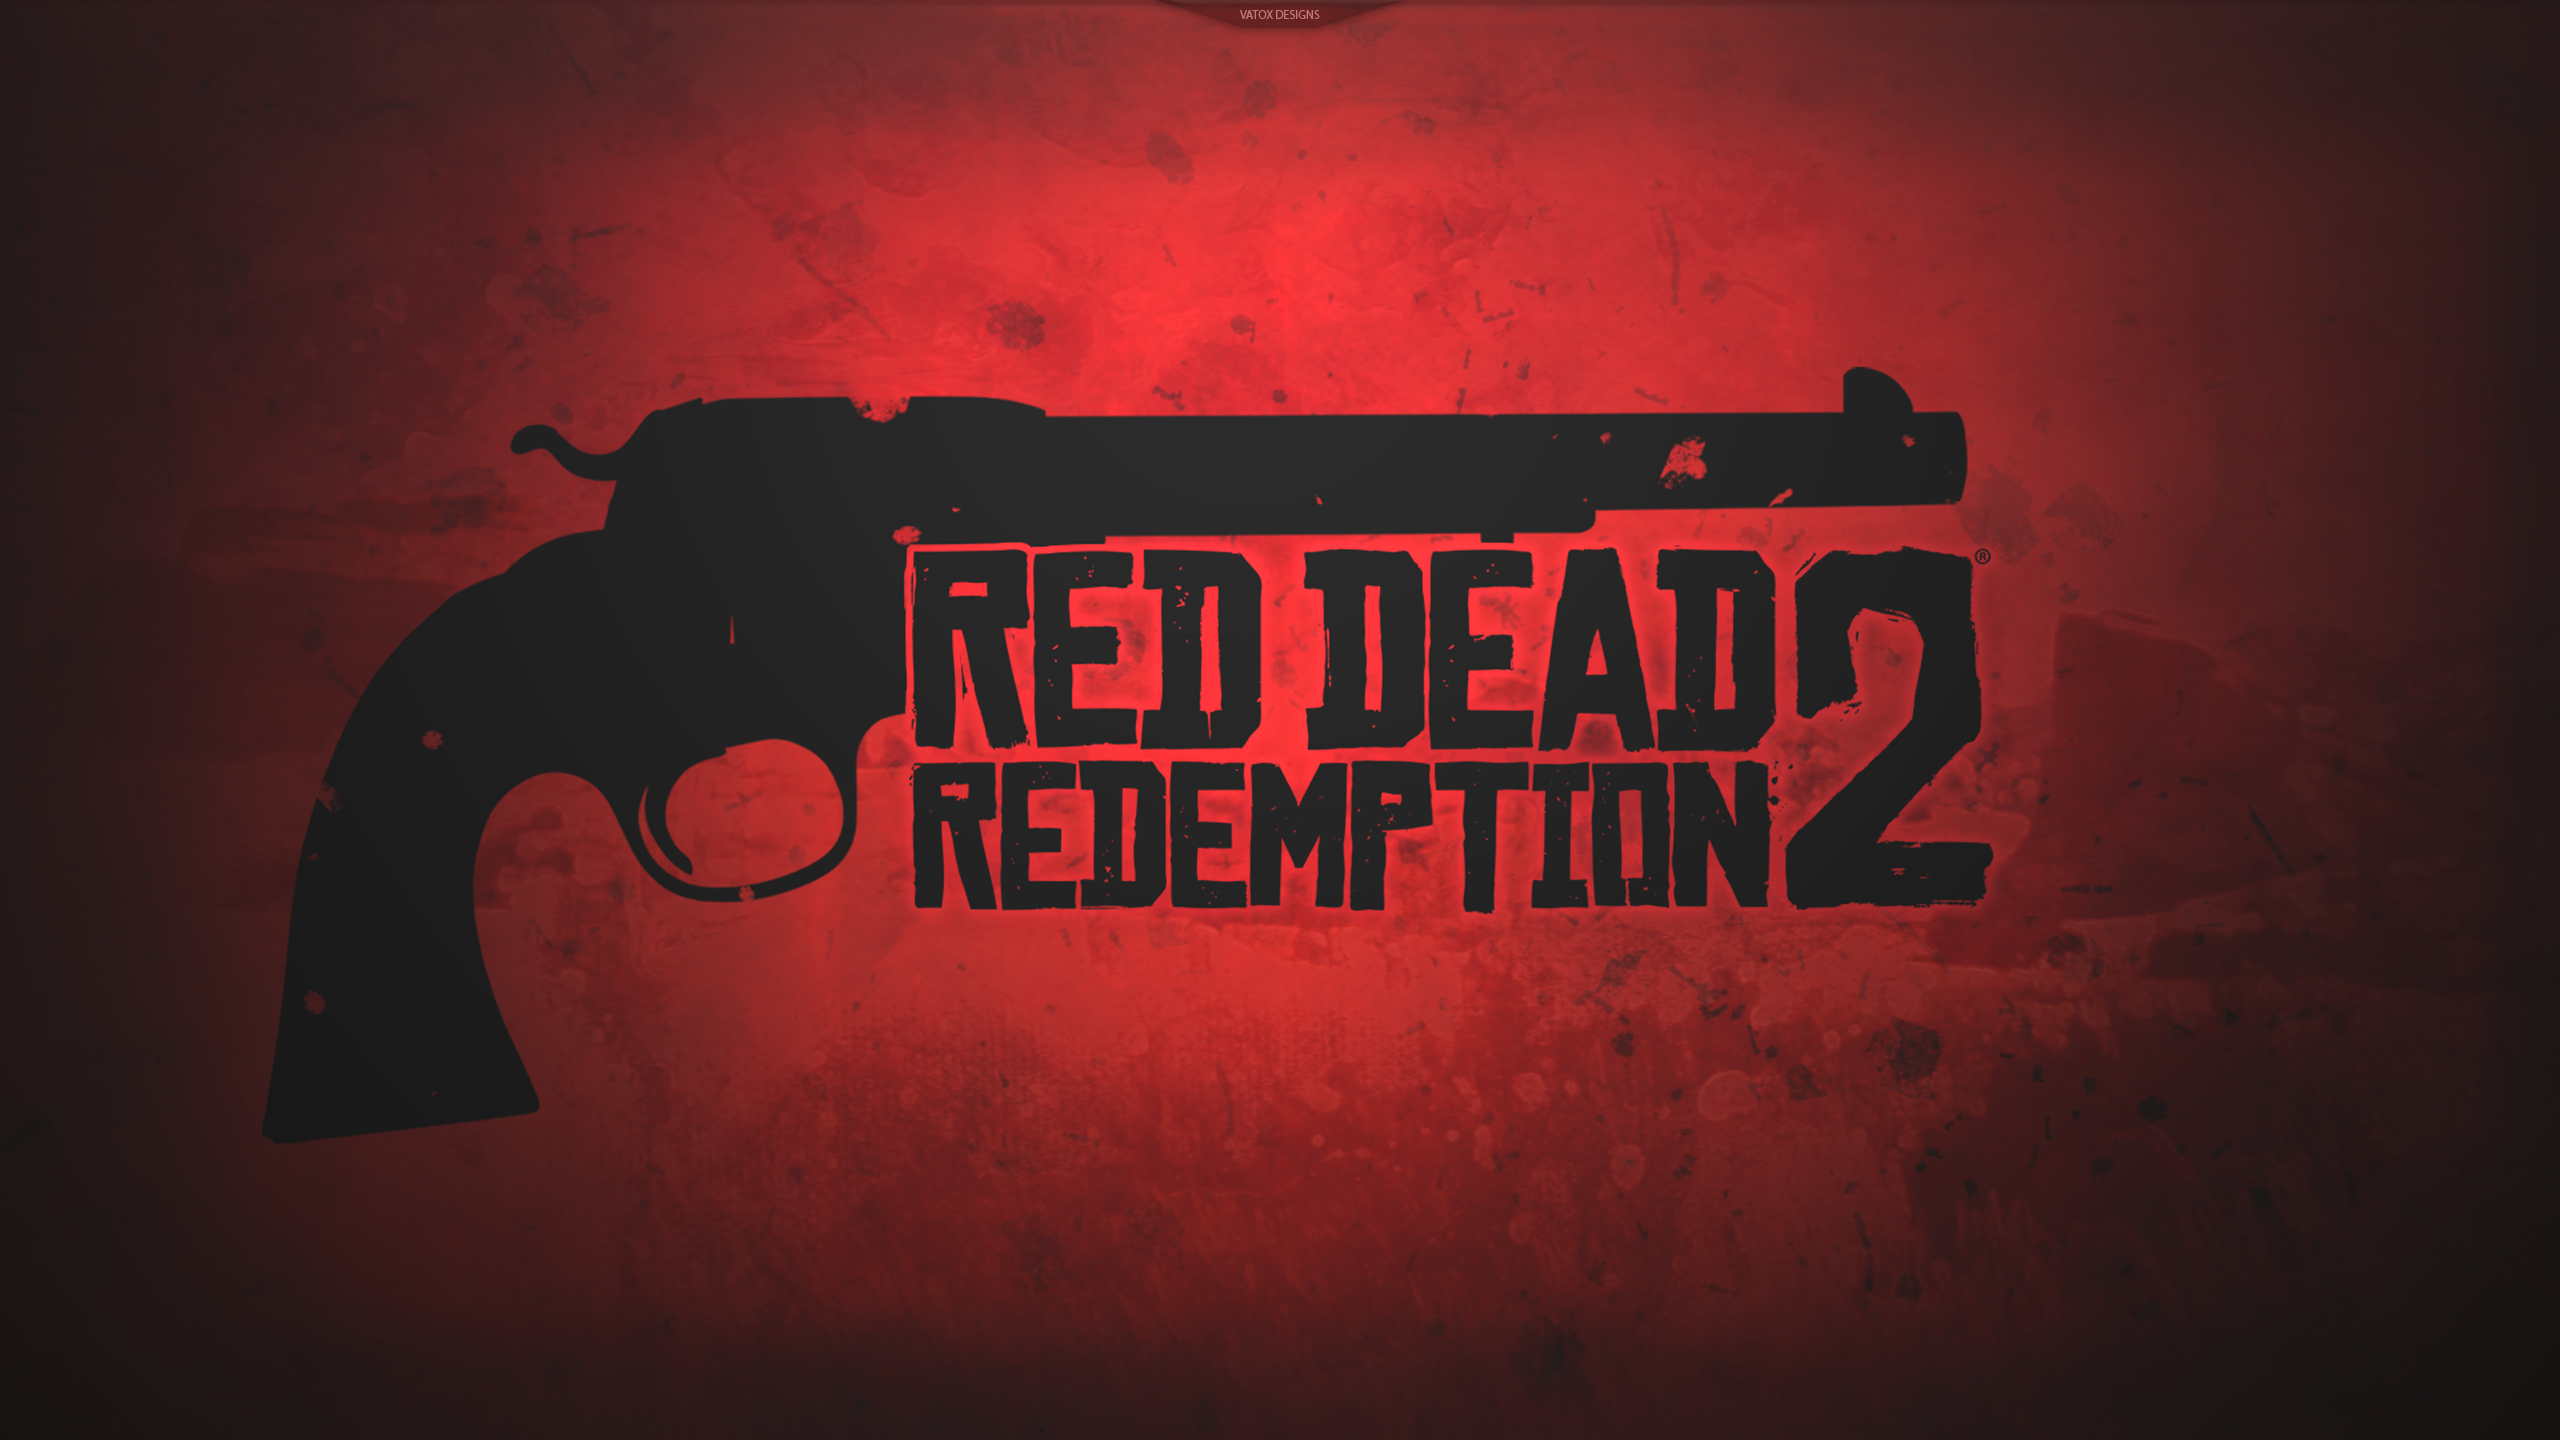 Dù Red Dead Redemption 2 gặp phải vấn đề lỗi trên PC, nhưng hình ảnh trong game vẫn tuyệt đẹp! Hãy cùng xem hình ảnh này để khám phá thế giới miền Tây hoang dã nhưng cực kỳ sống động!